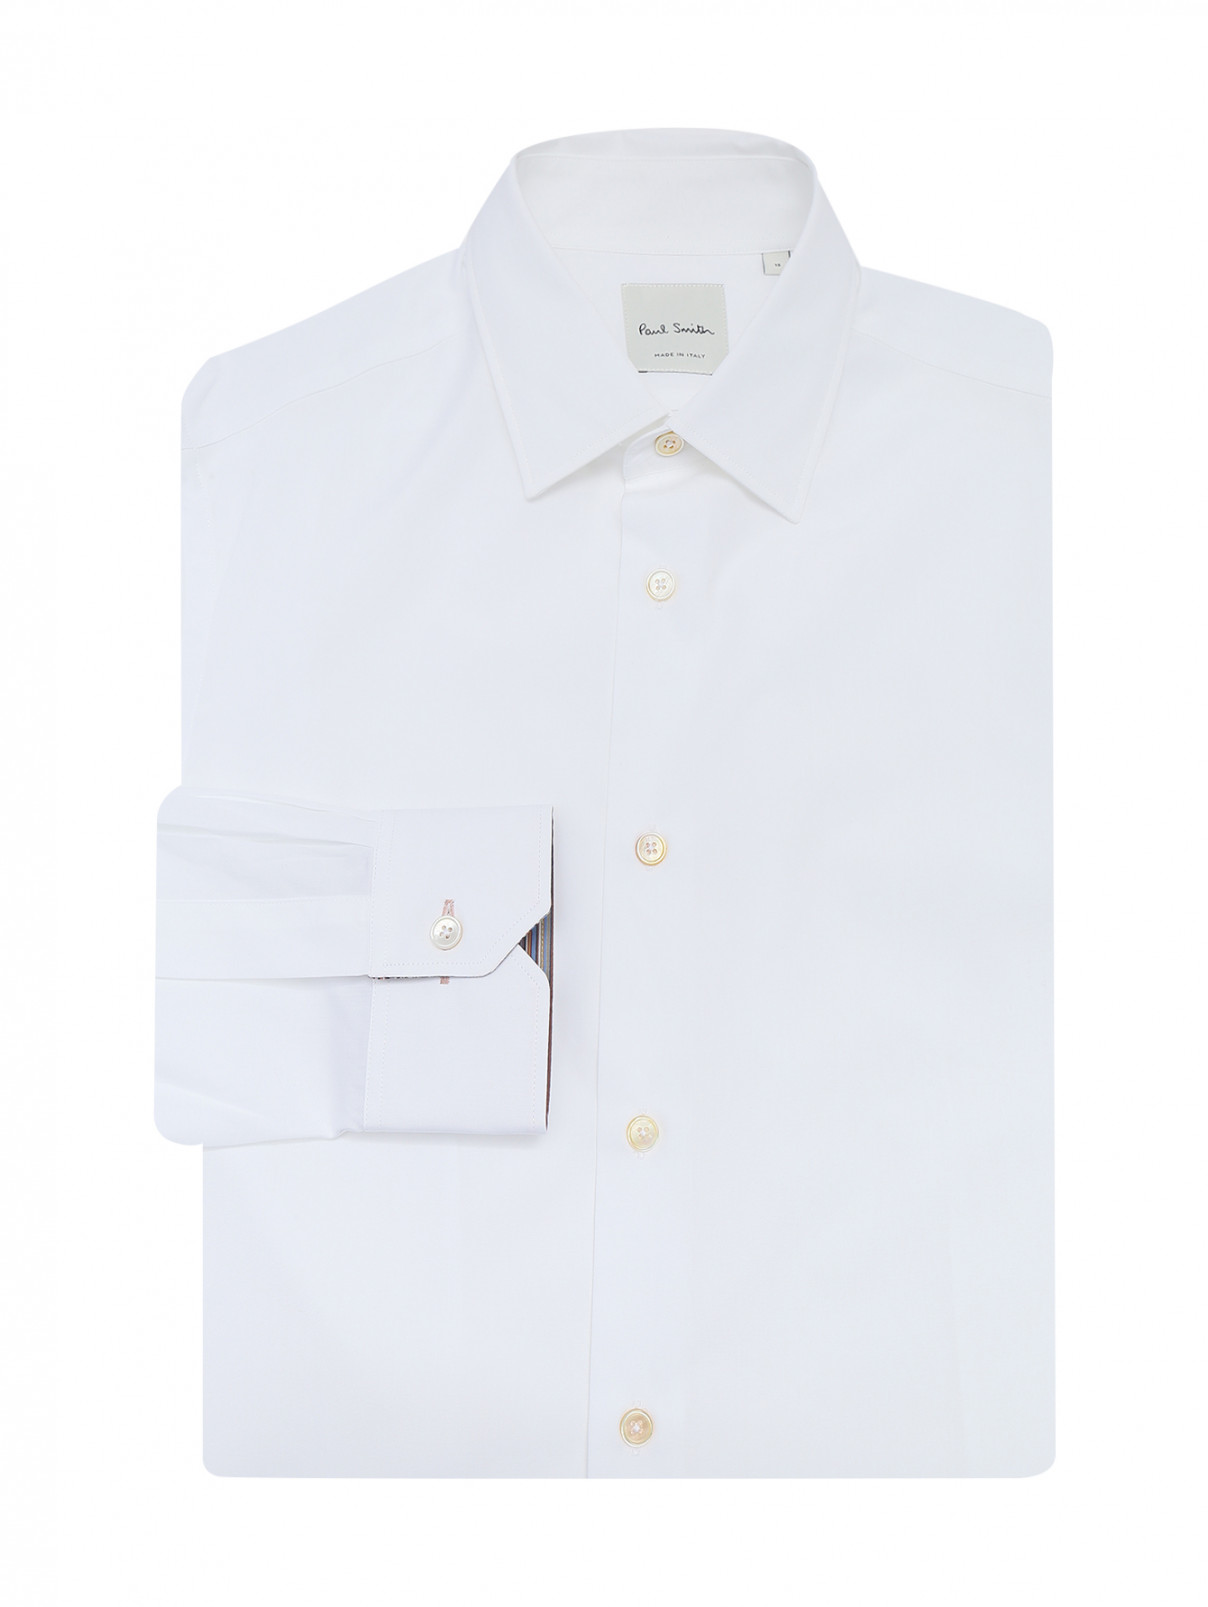 Однотонная рубашка из хлопка Paul Smith  –  Общий вид  – Цвет:  Белый